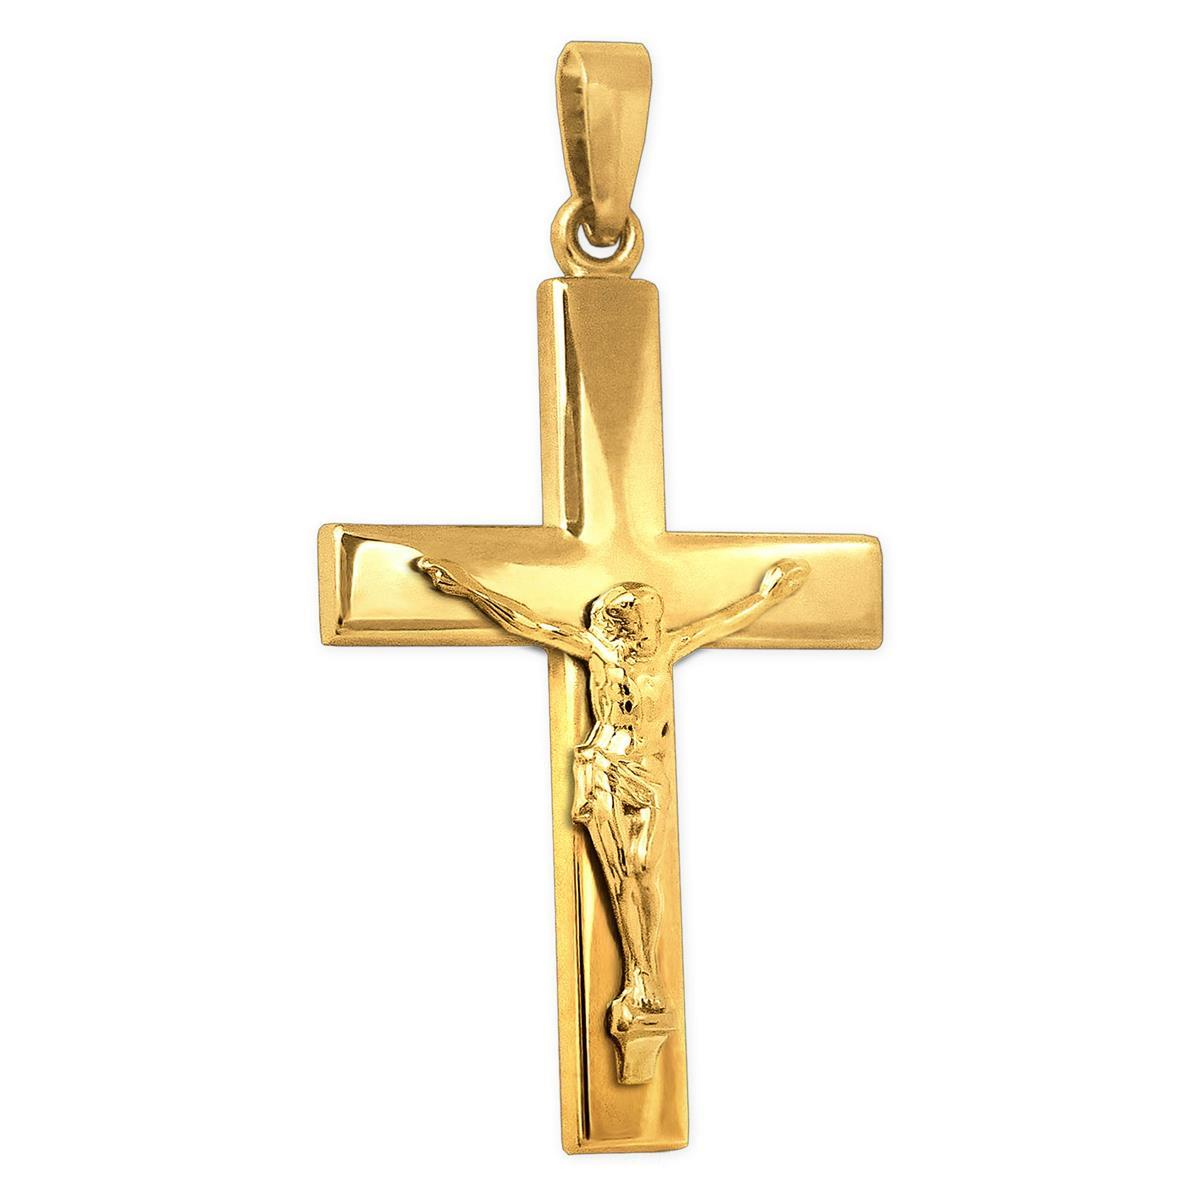 Goldenes großes Jesuskreuz 41 mm breite Ballken schlichte Form 375 GOLD 9 KARAT